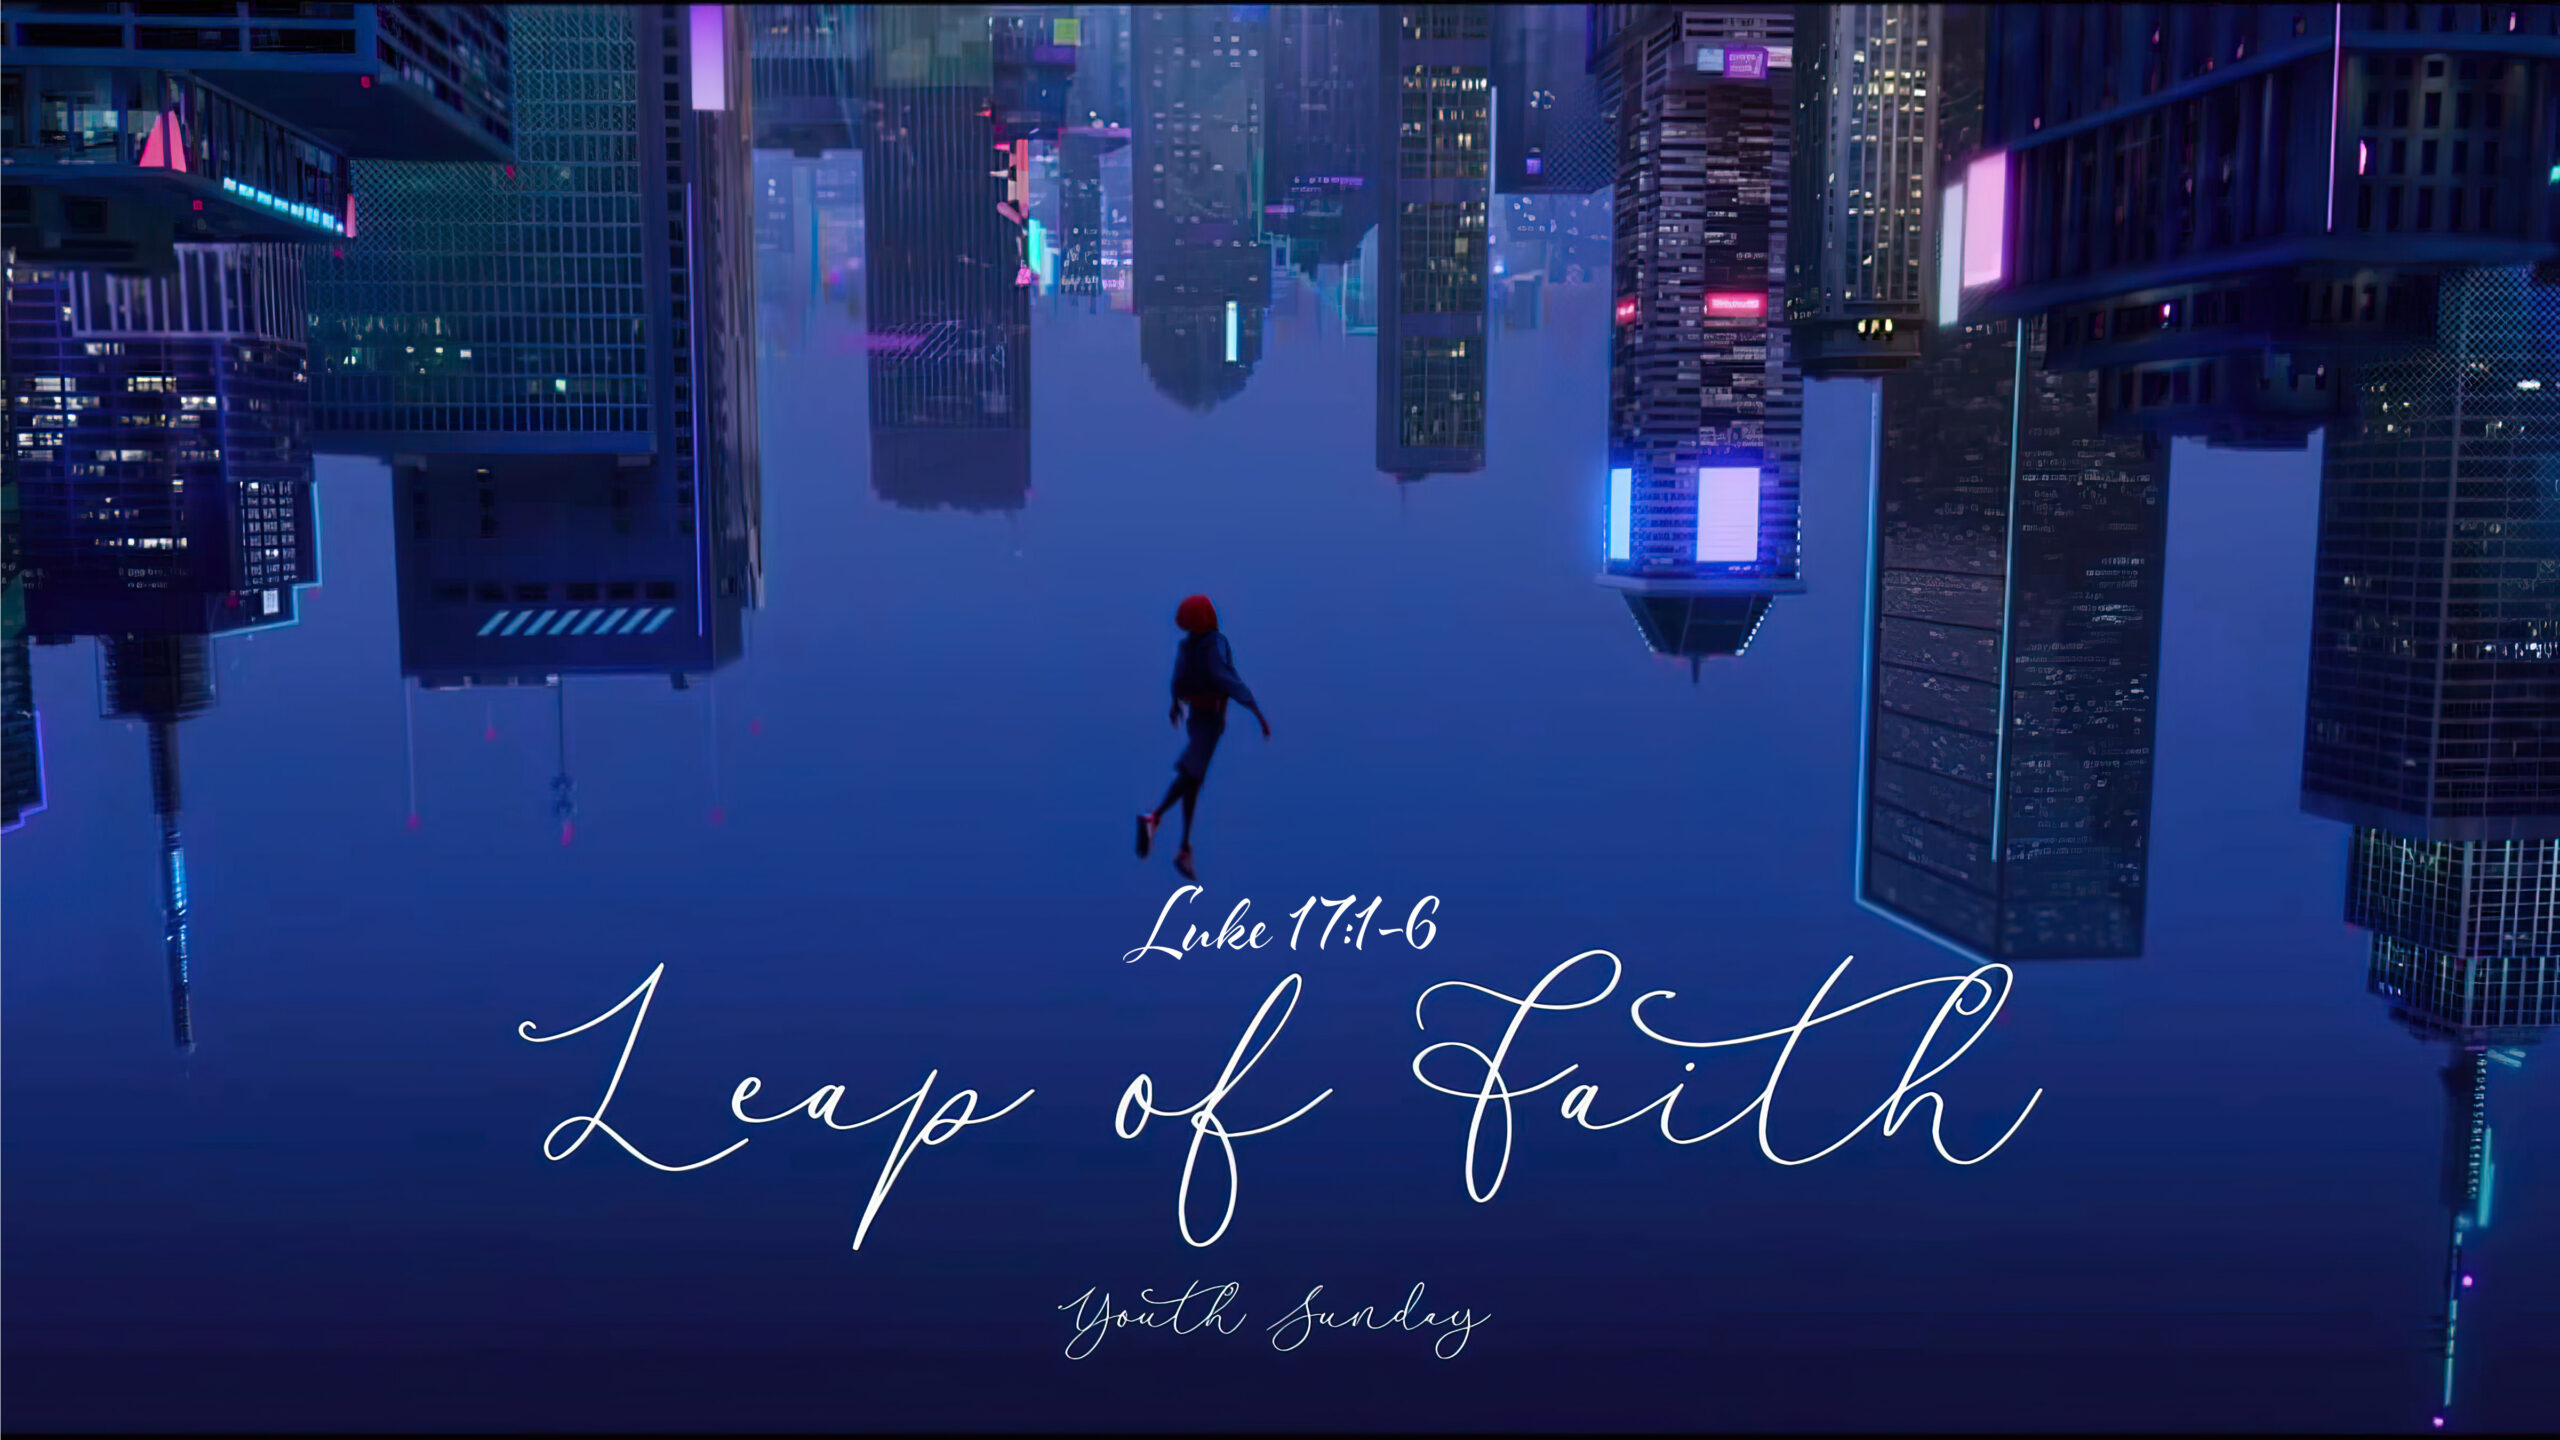 A Leap of Faith - Youth Sunday